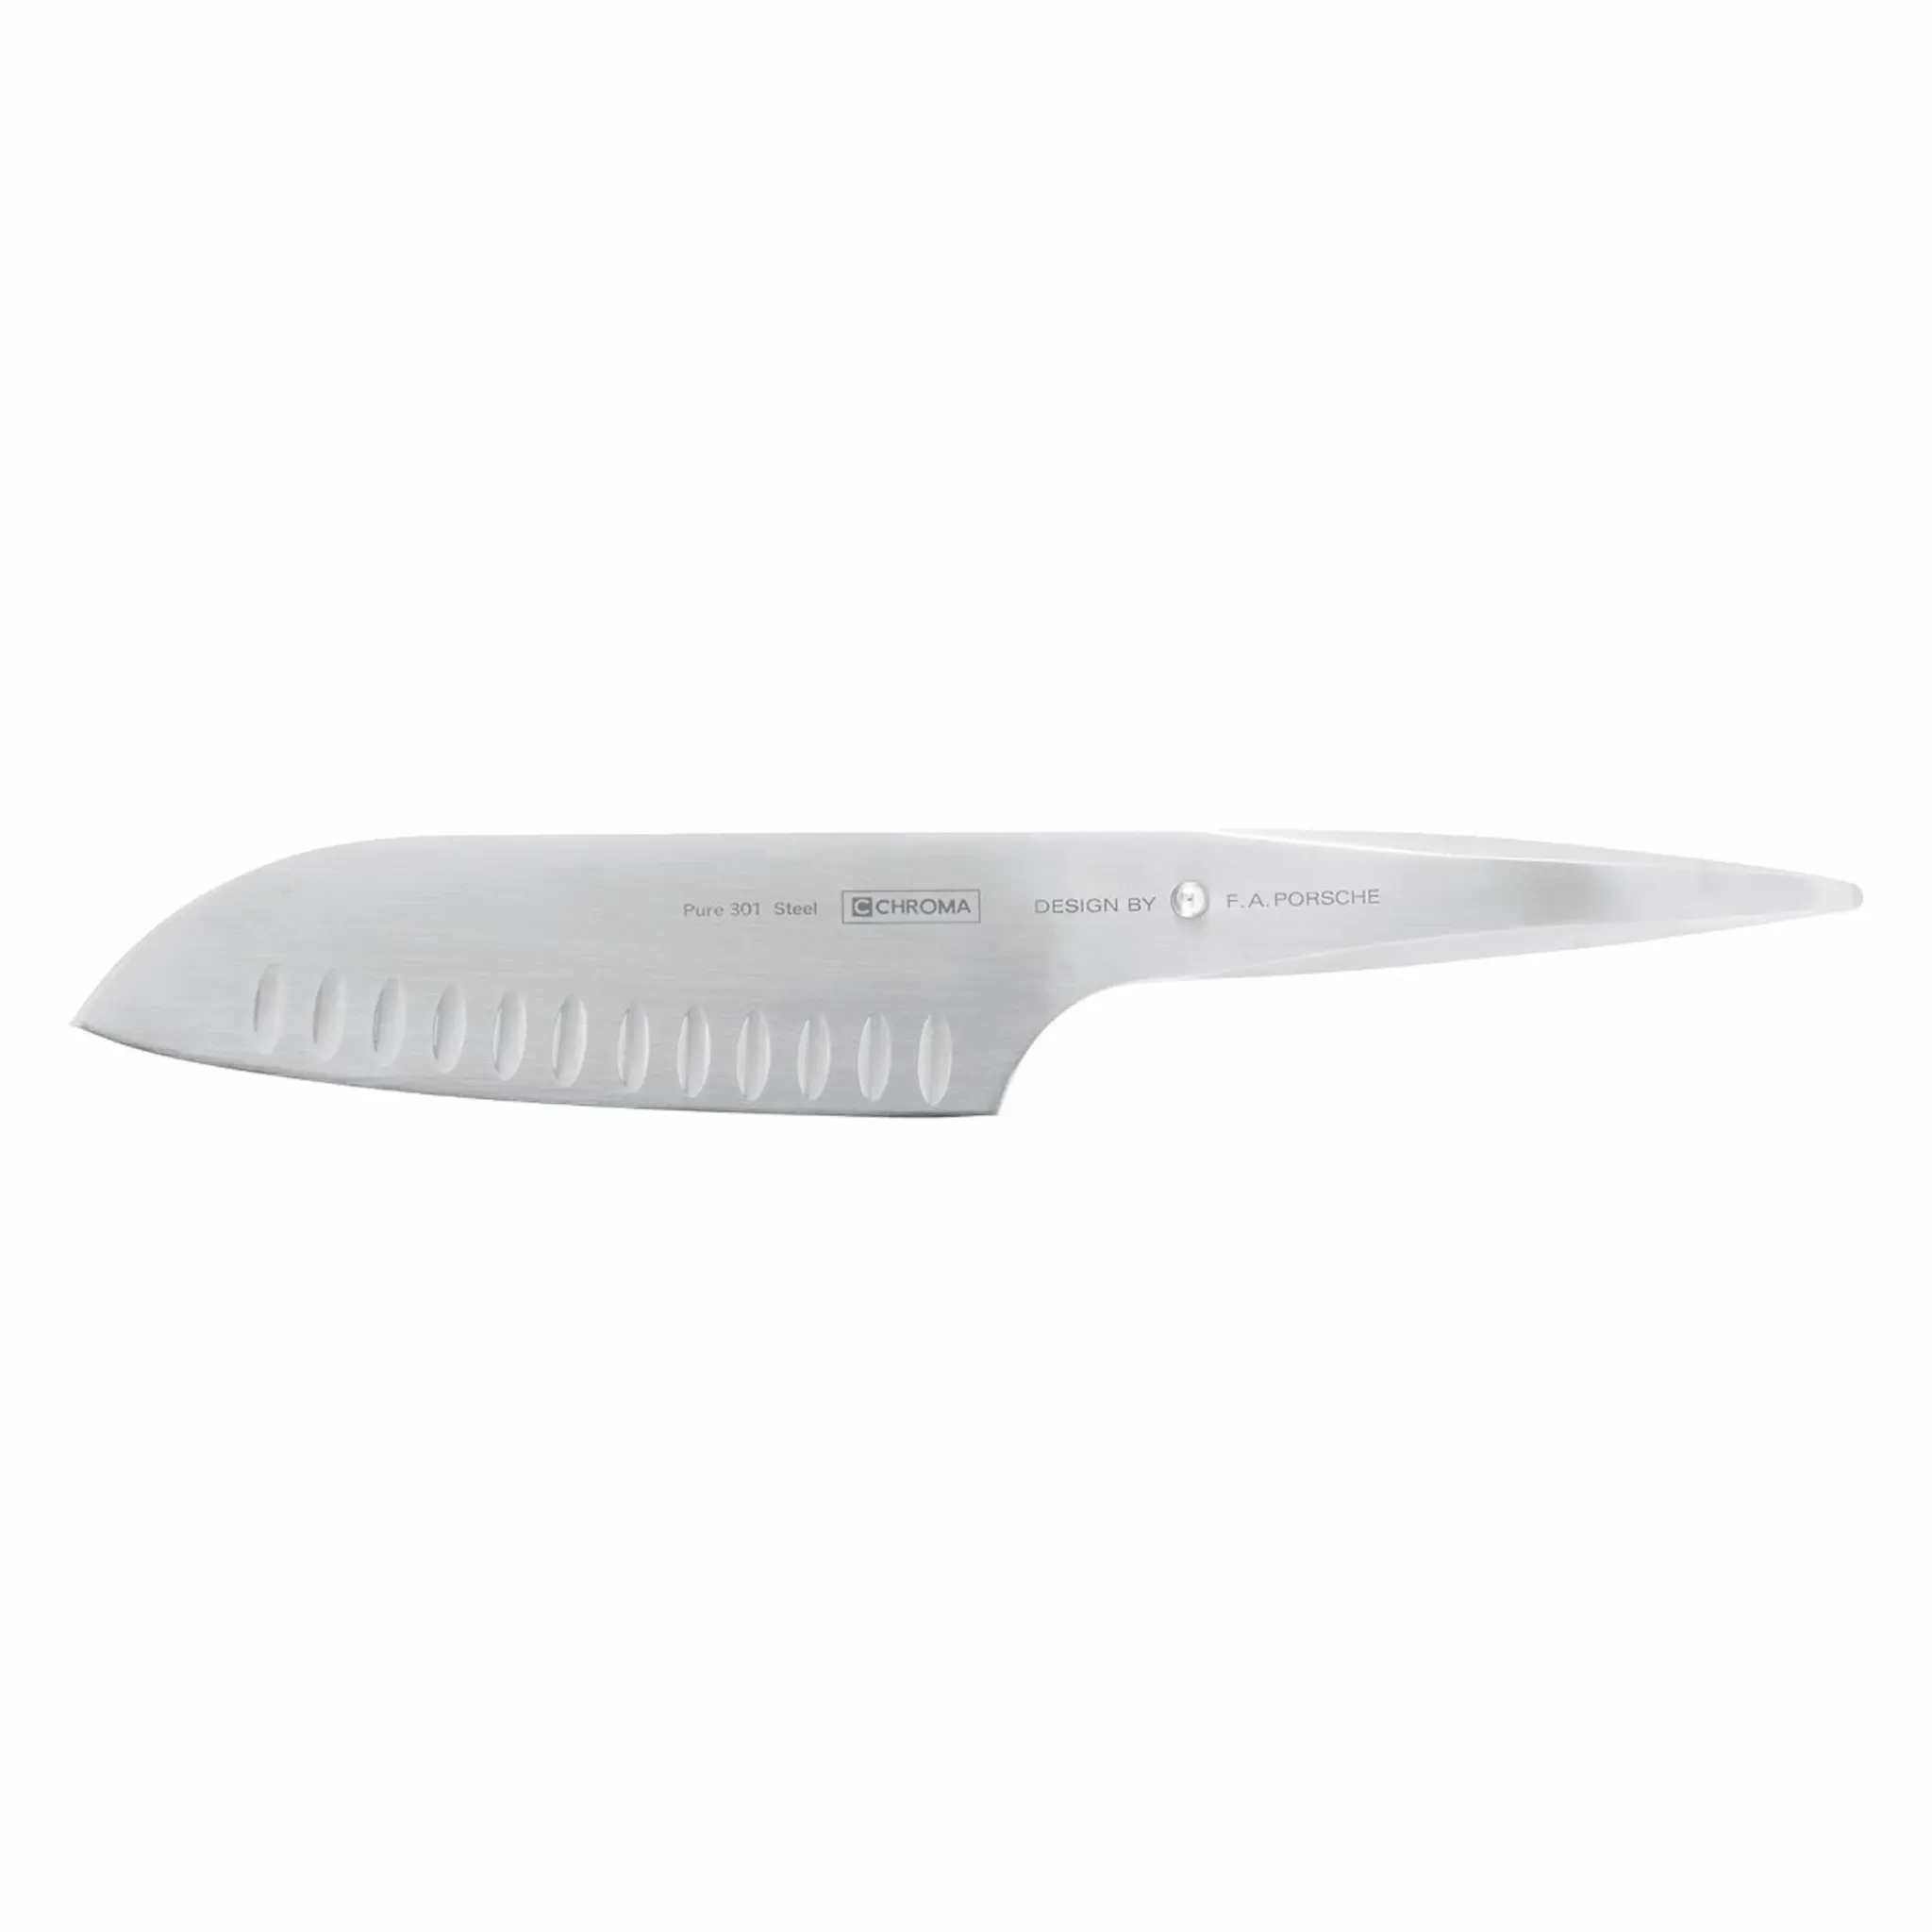 Chroma Type 301 kokkekniv med hull japansk 18 cm